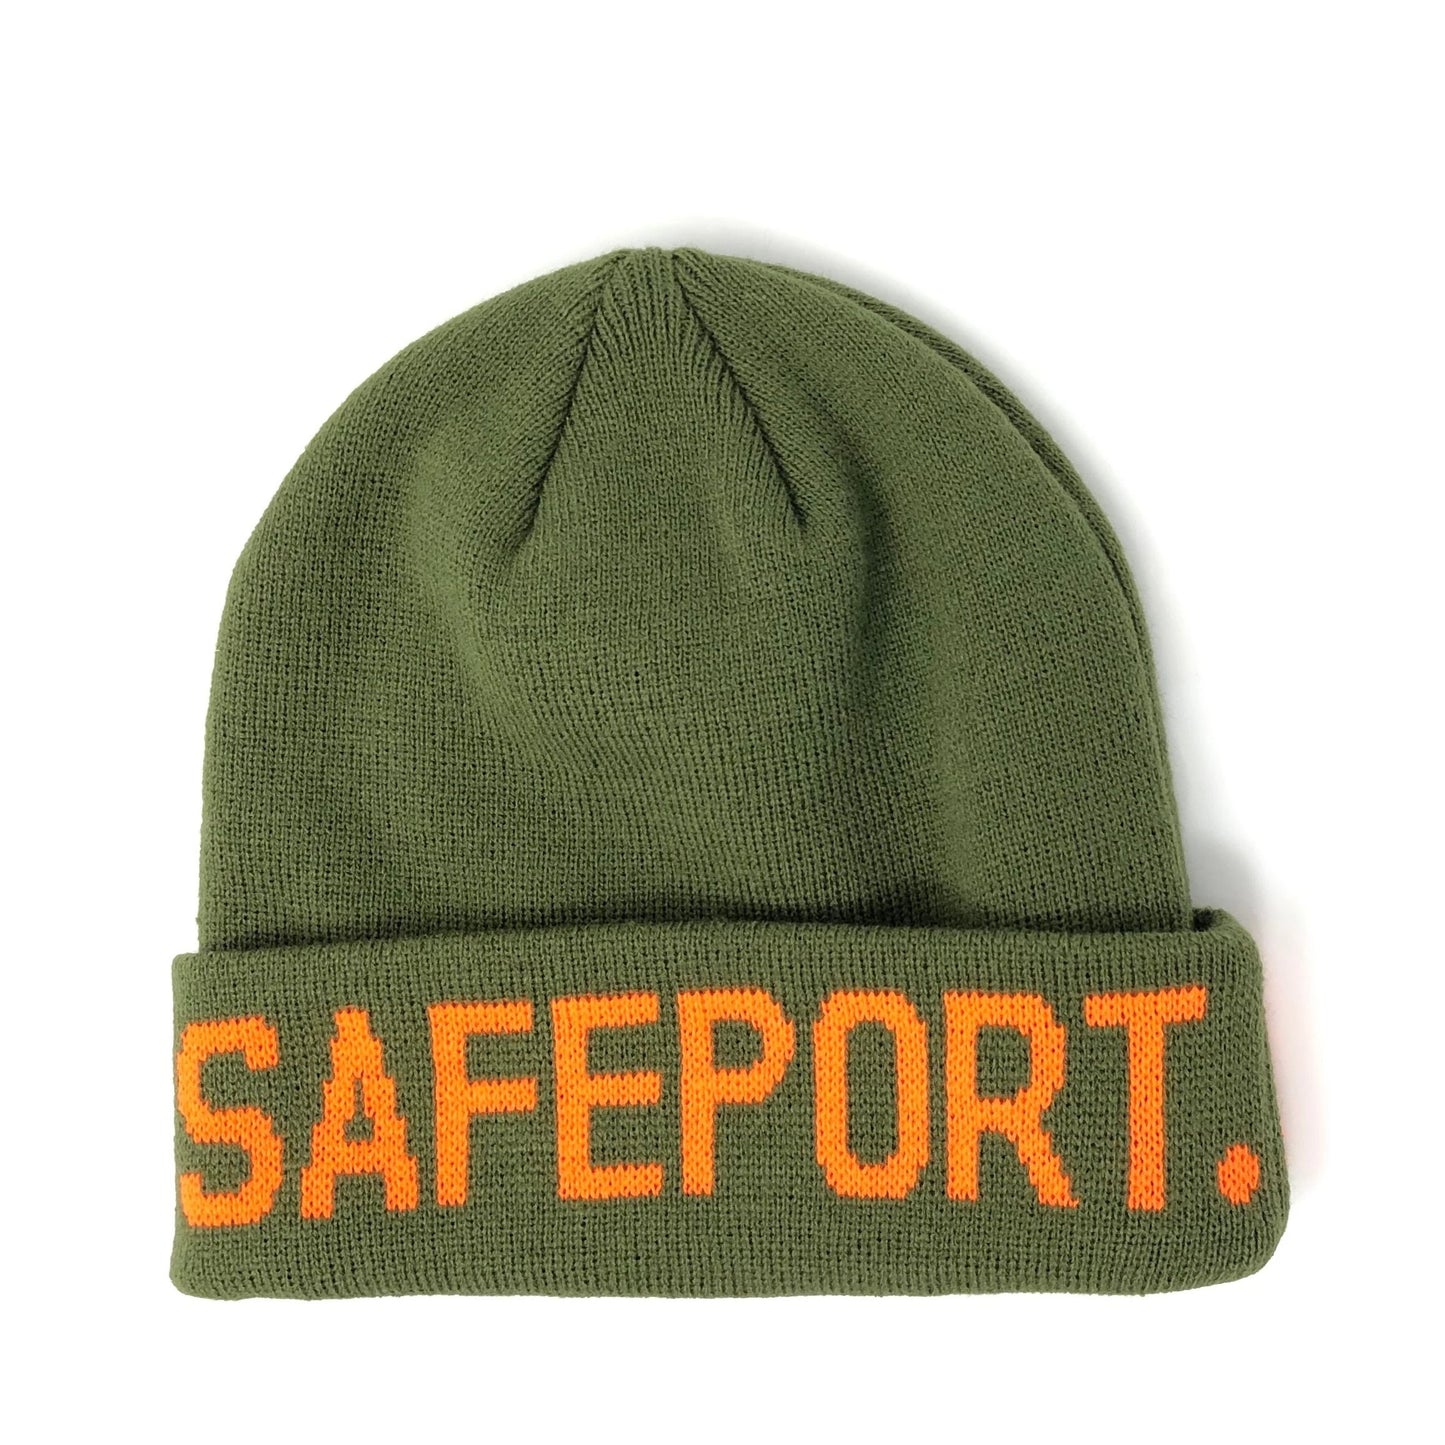 Safeport OG Beanie - Green